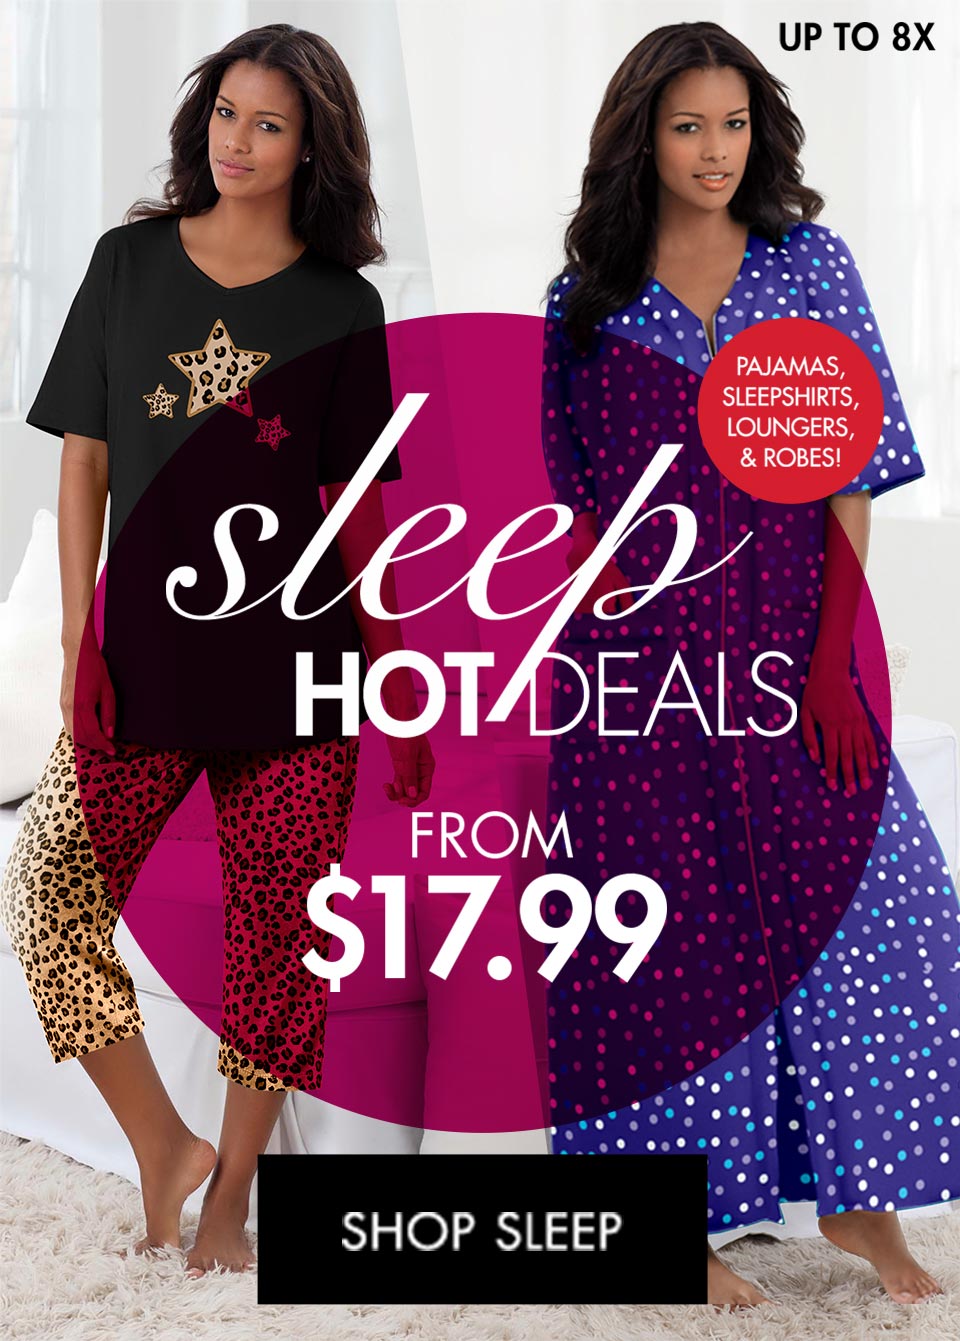 Sleep Hot Deals from $17.99- Shop Sleep